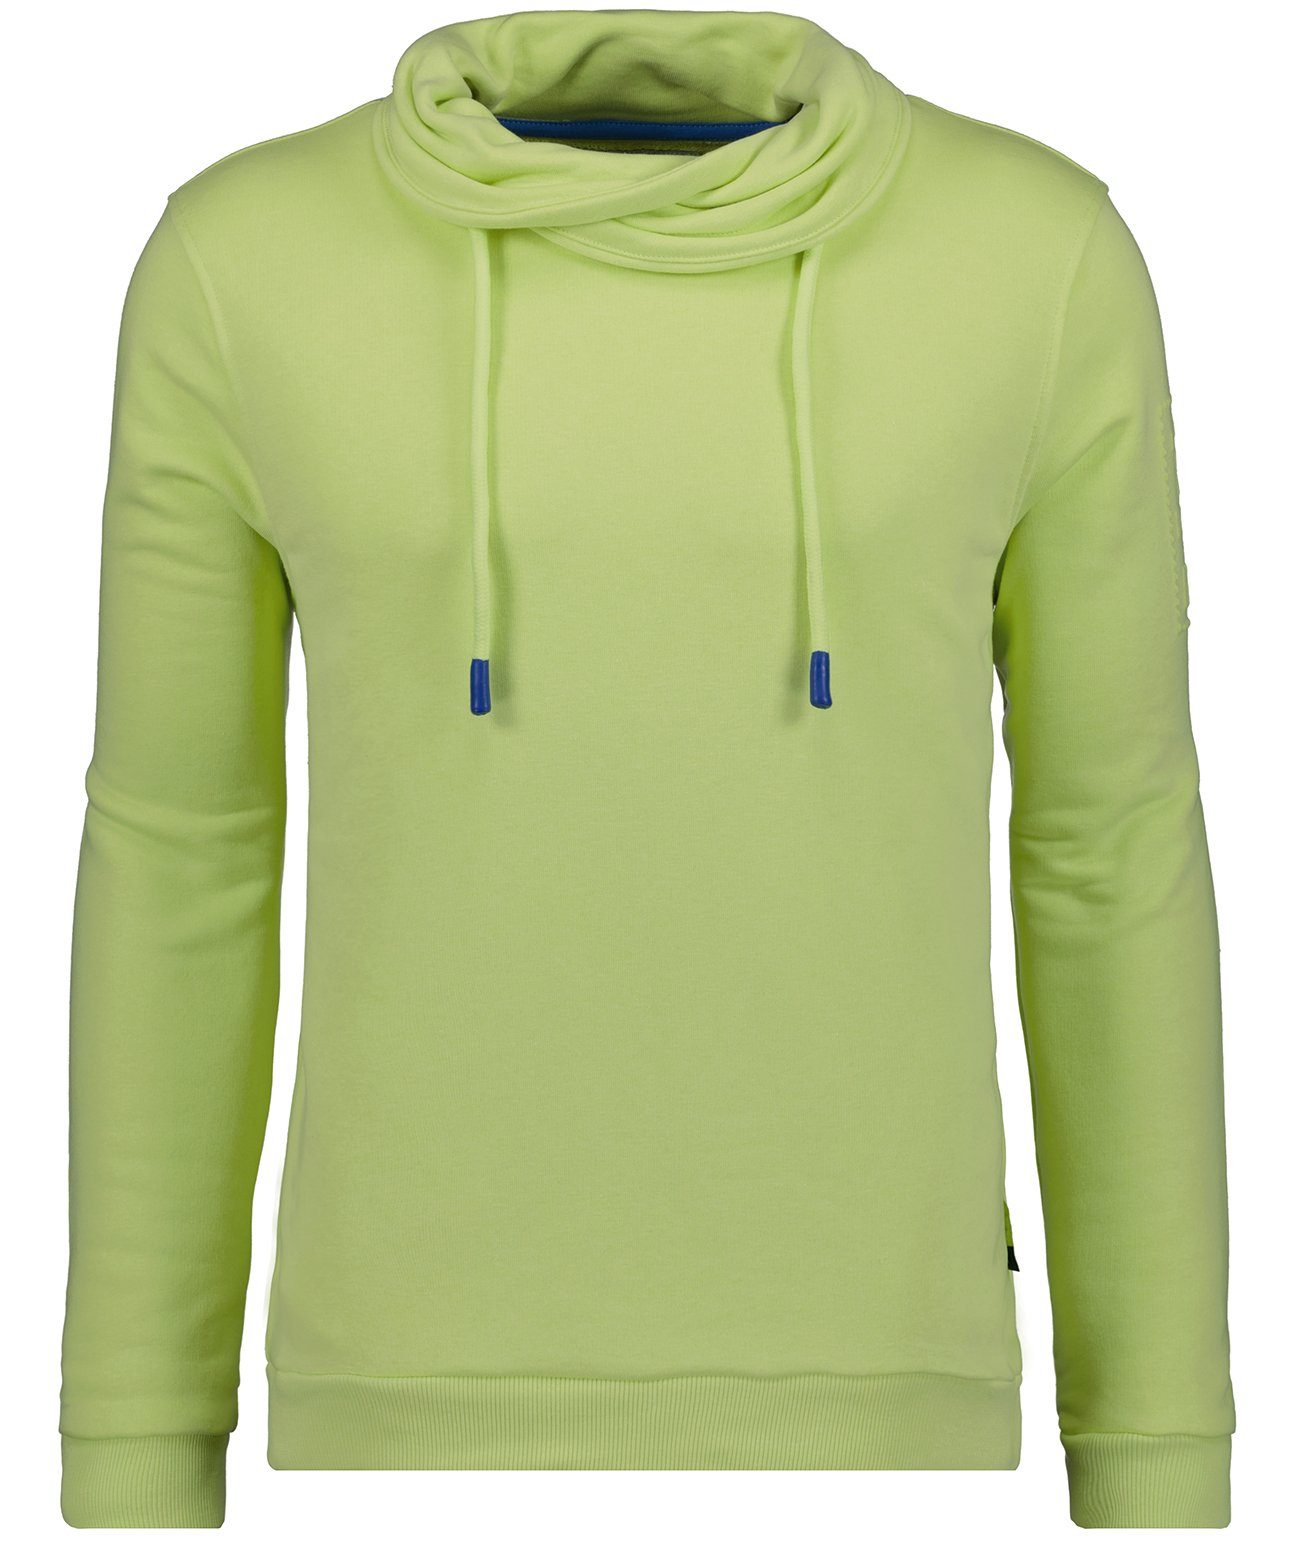 RAGMAN Sweatshirt Limone-531